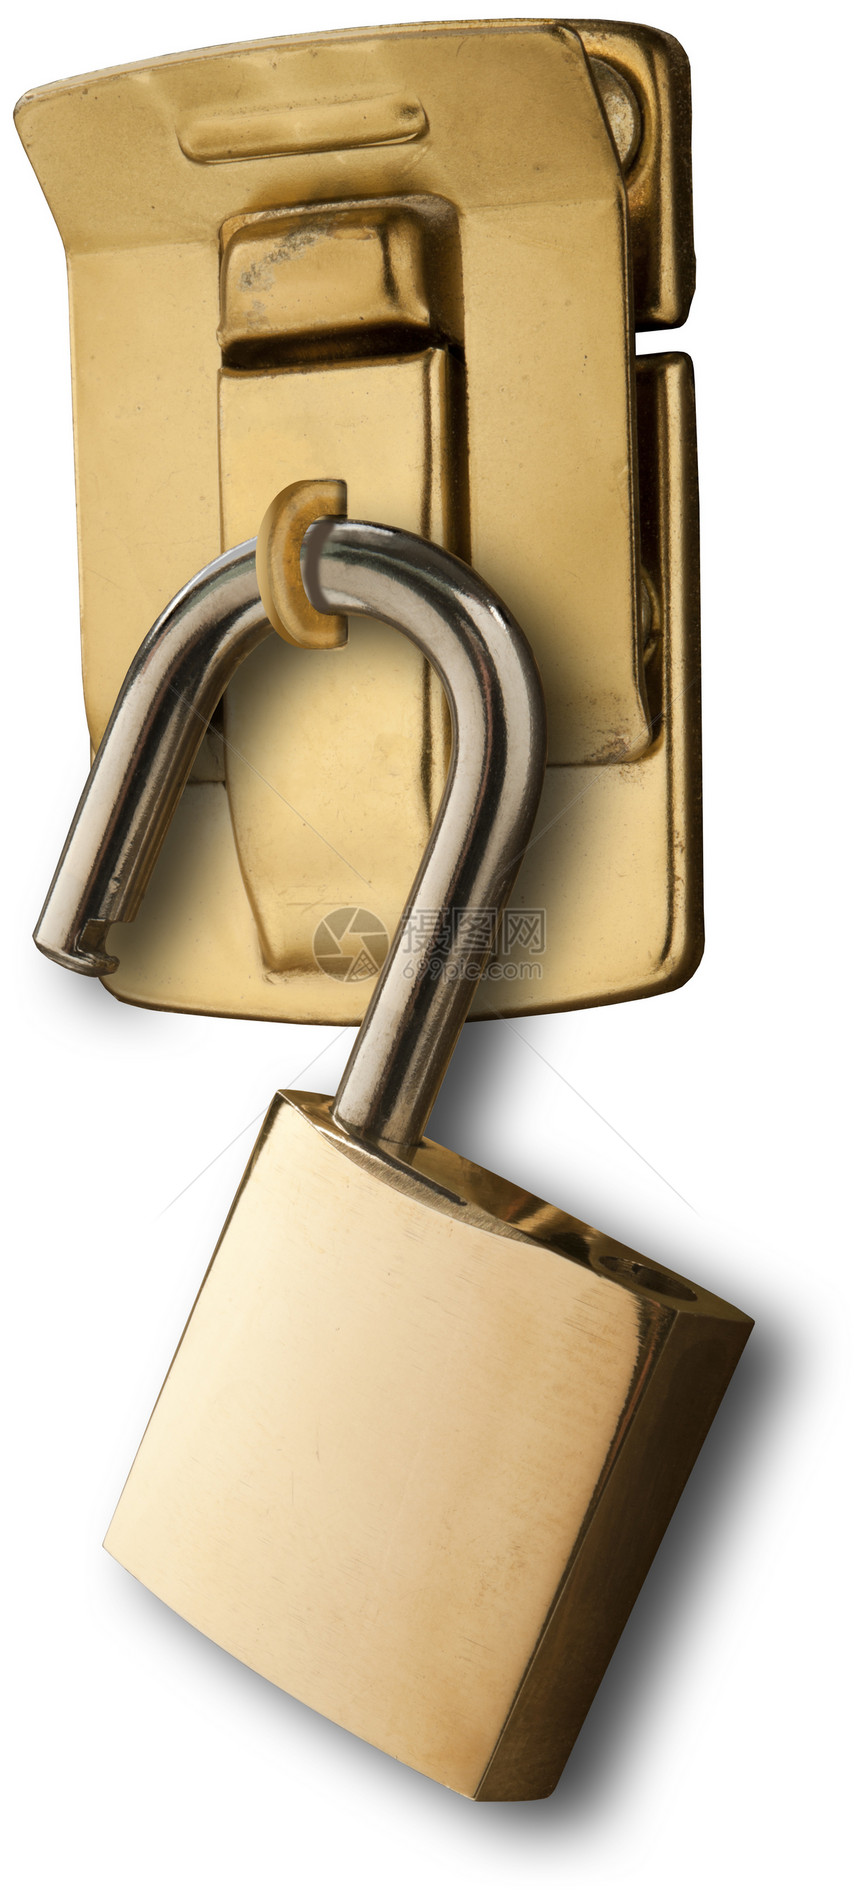 解锁框人员安保黄铜门闩木头盒子保安系统图片